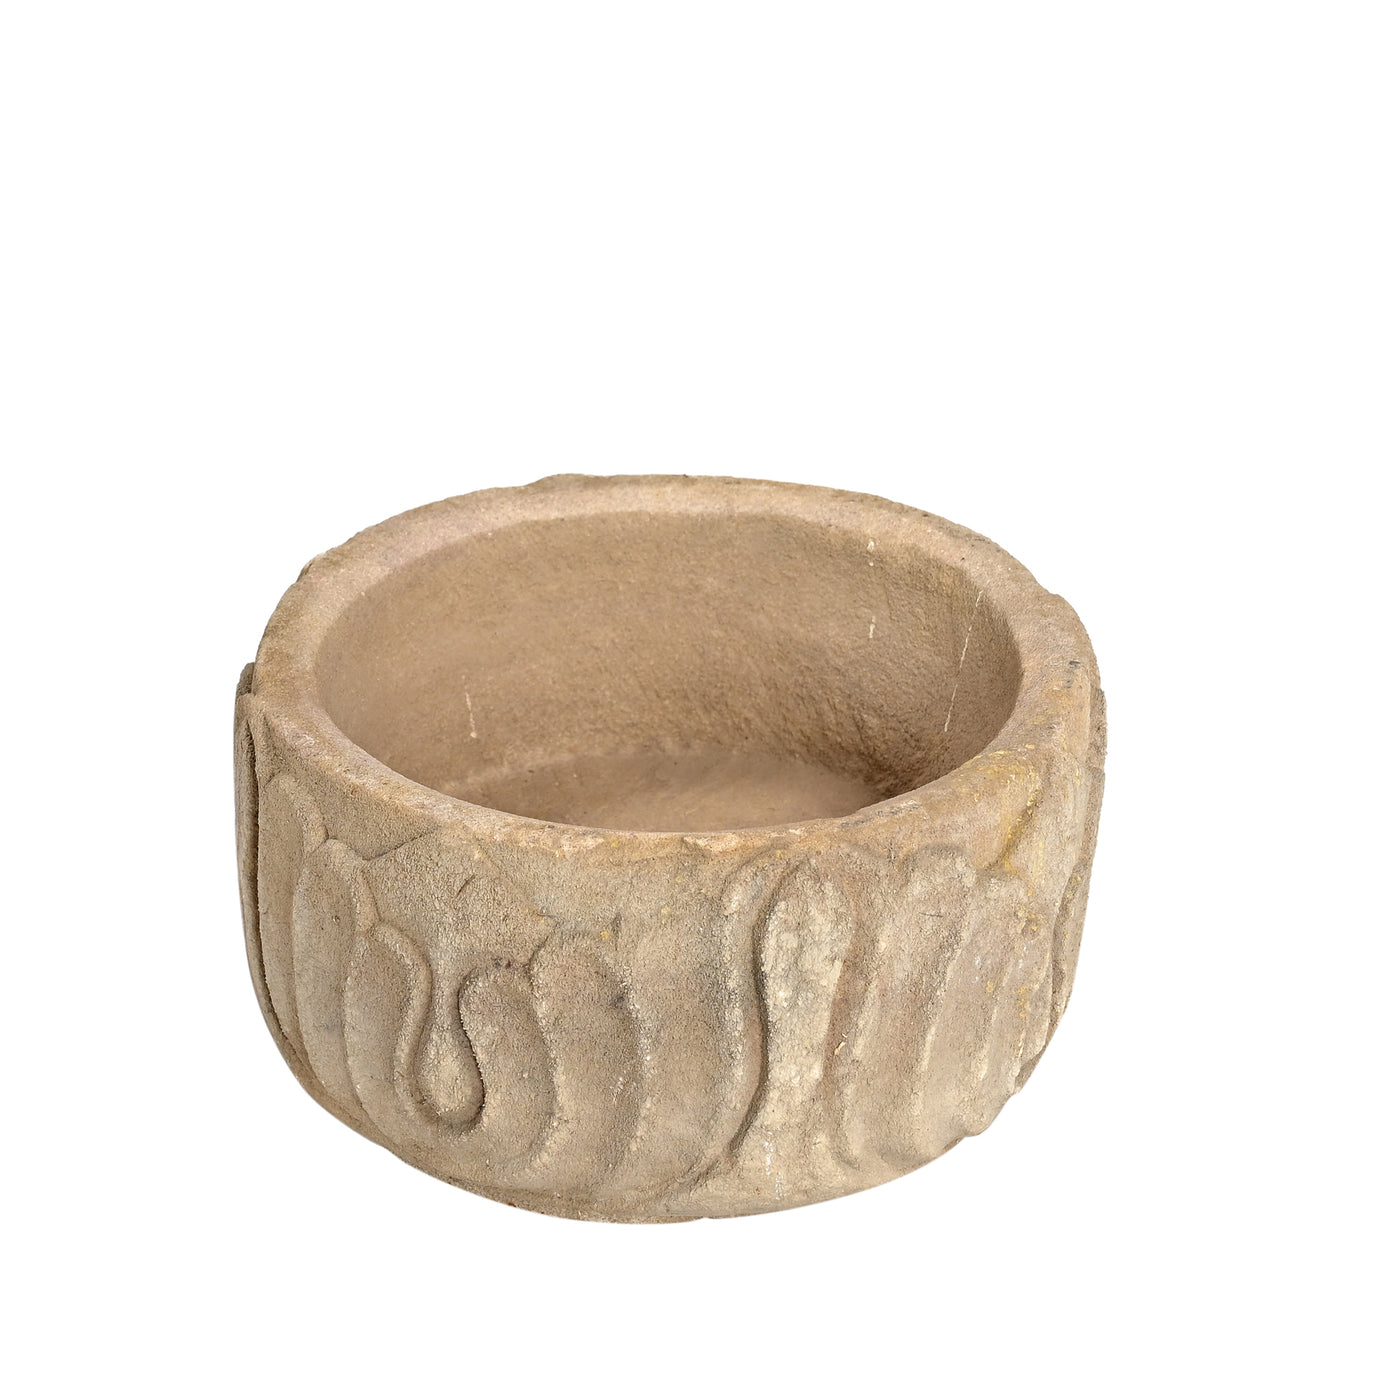 Devliya - Stone bowl n ° 10